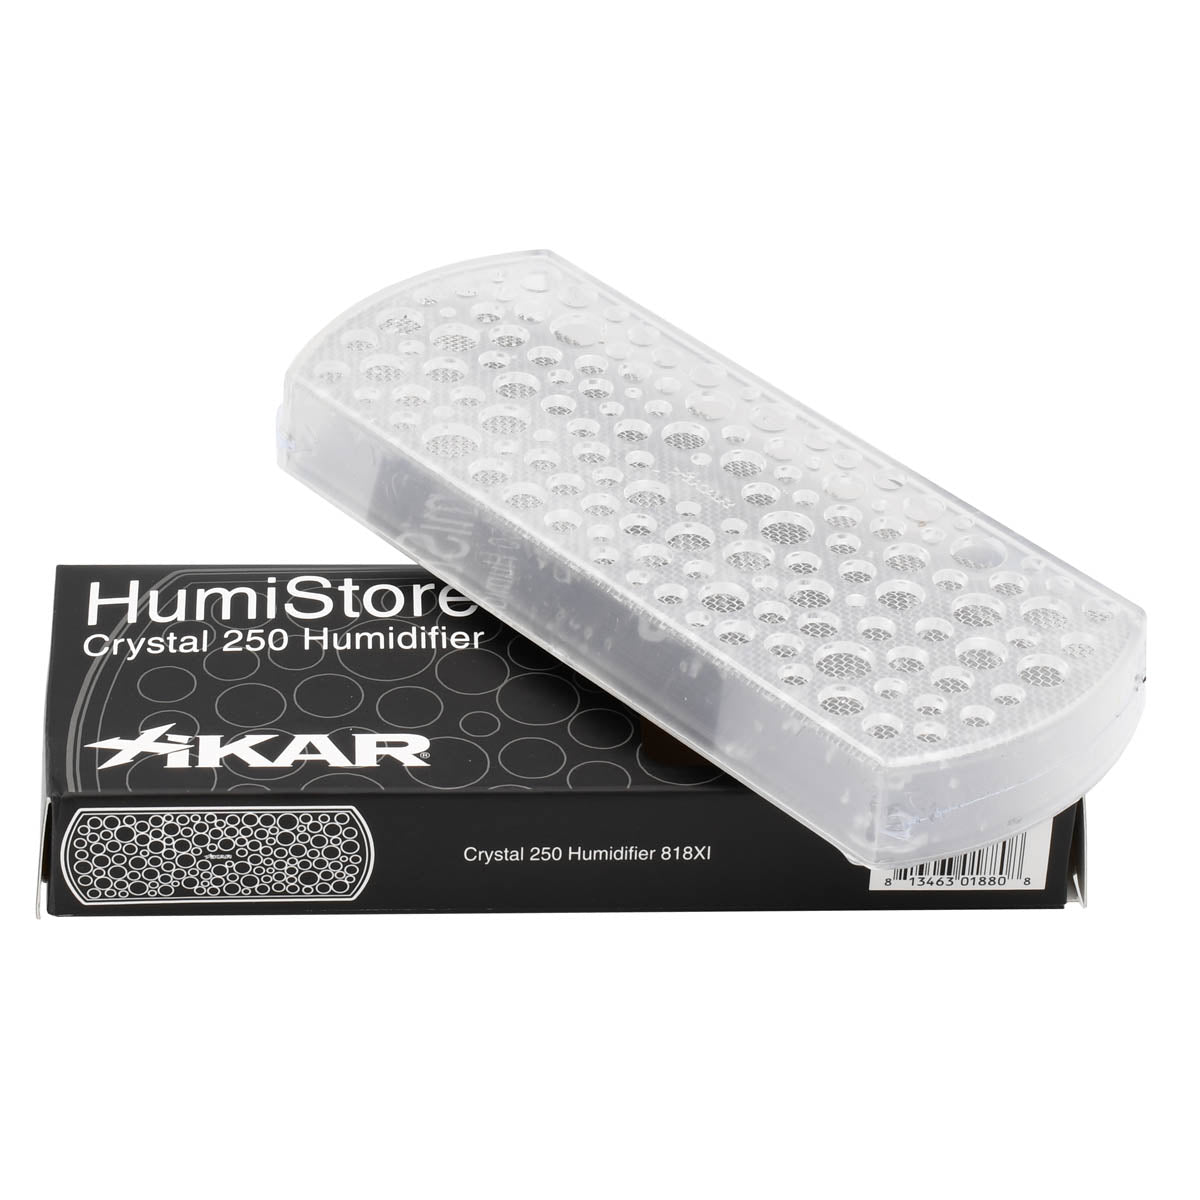 XIKAR® Crystal 250 Humidifier